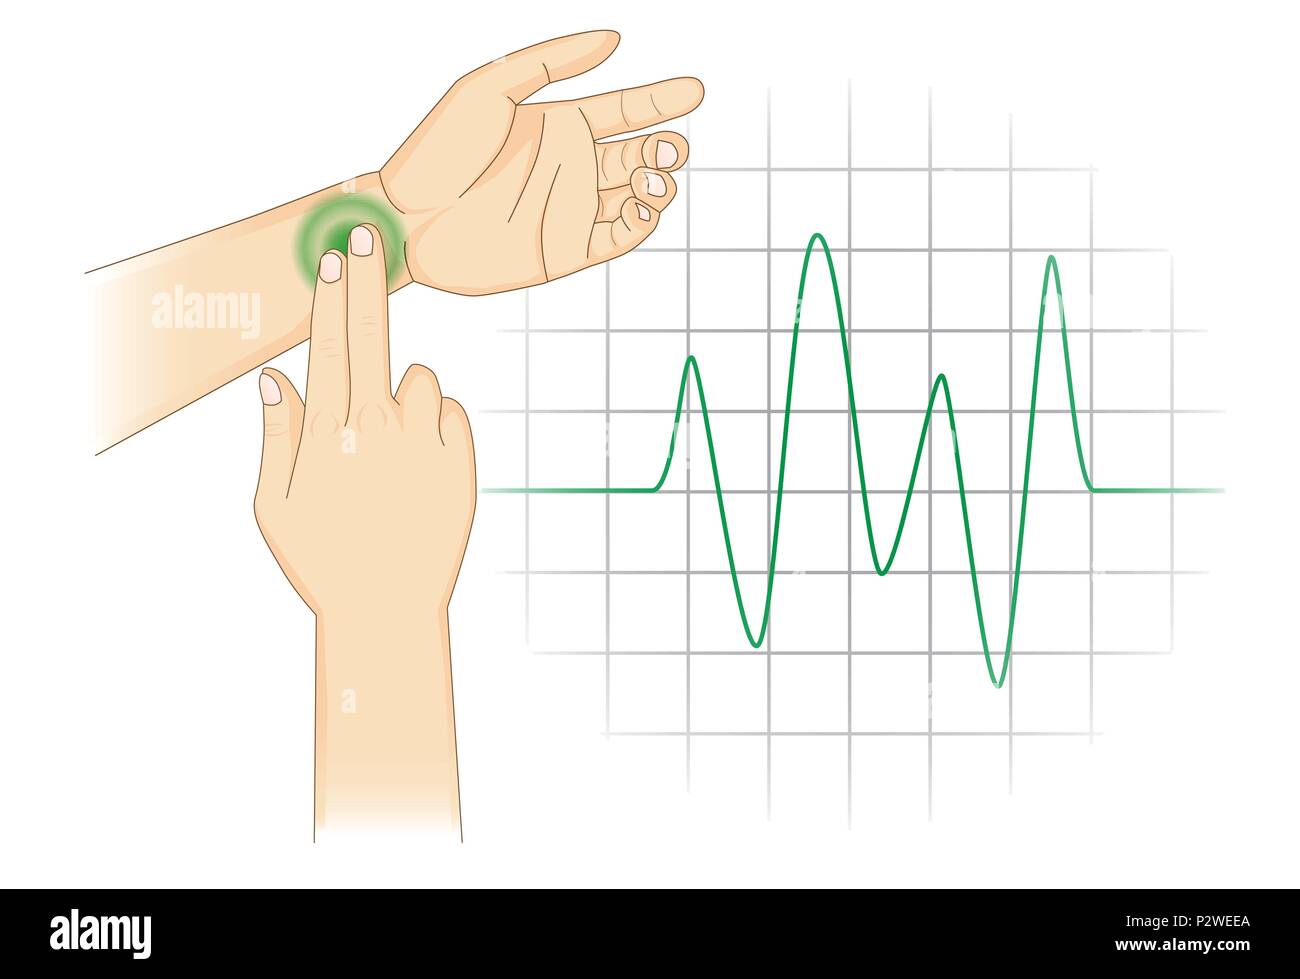 Controllare la frequenza cardiaca manualmente con il posizionare due dita al polso. Illustrazione Vettoriale